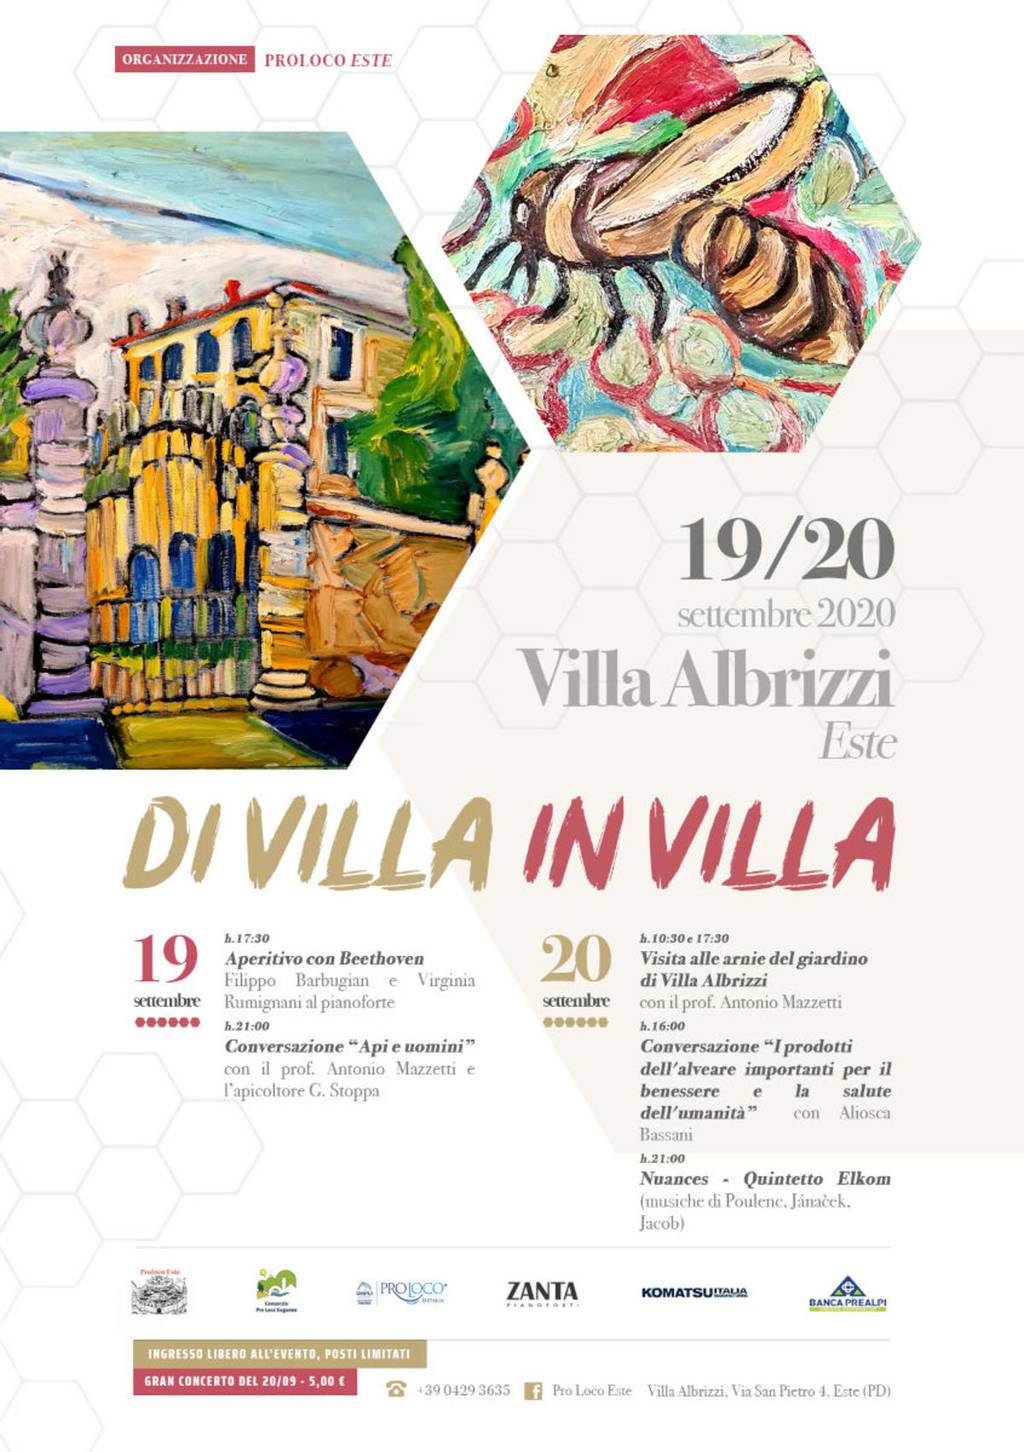 Di Villa in Villa: Villa Albrizzi, Este